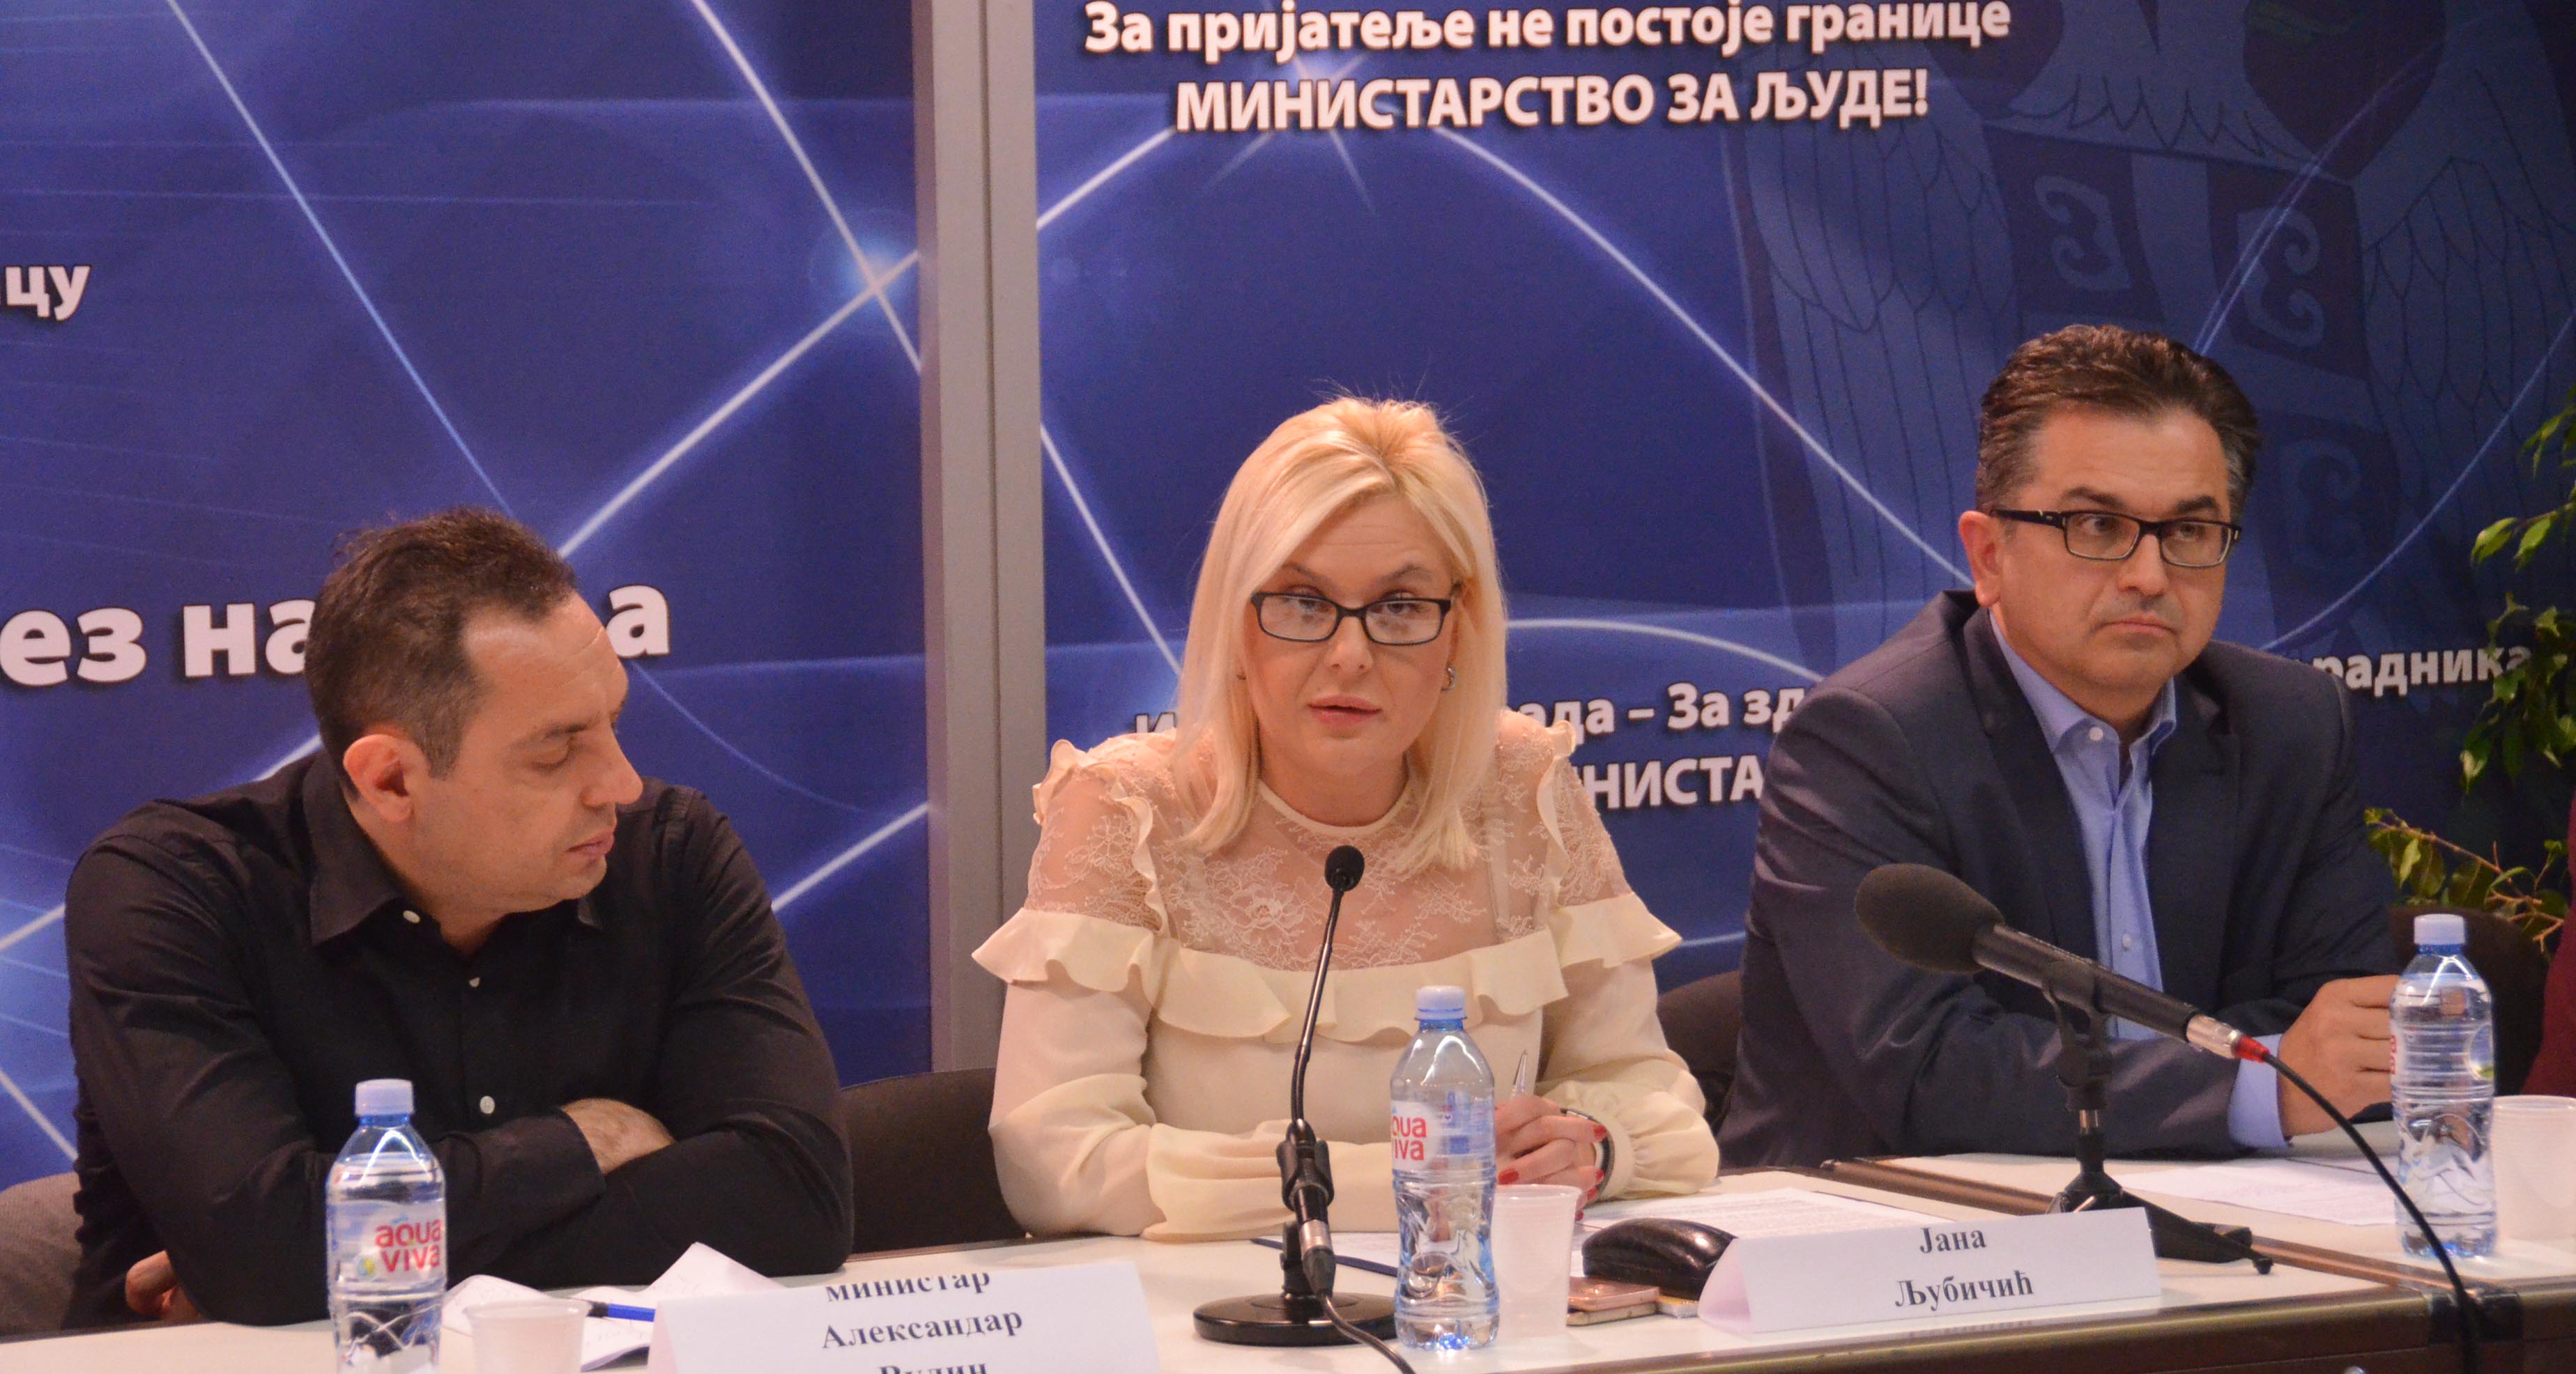 Јана Љубичић: Република Србија је одлучна да се супротстави насиљу у породици